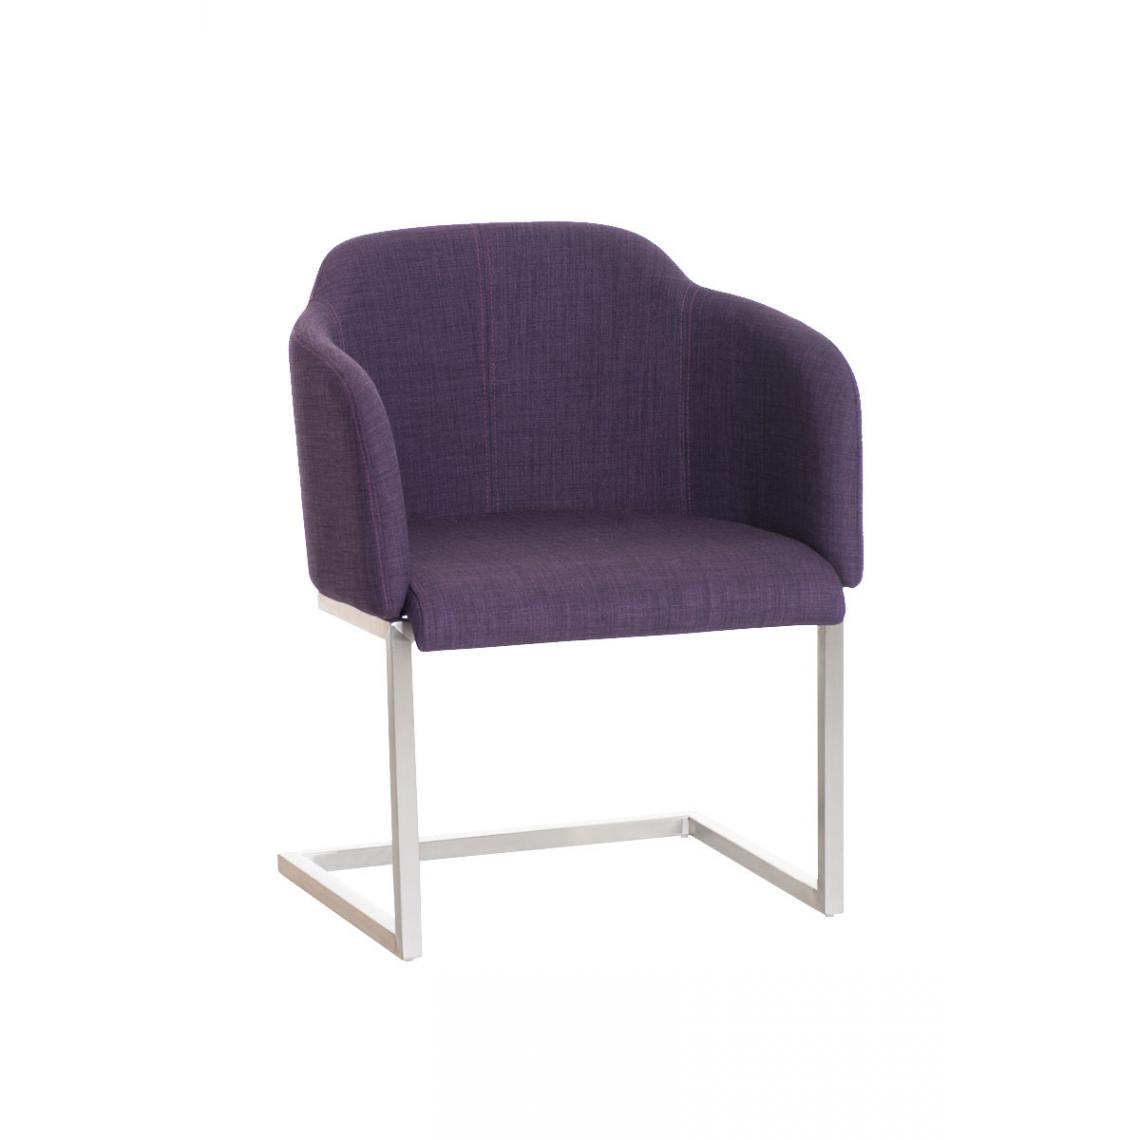 Icaverne - Chic Chaise visiteur en tissu edition Asuncion couleur violet - Chaises